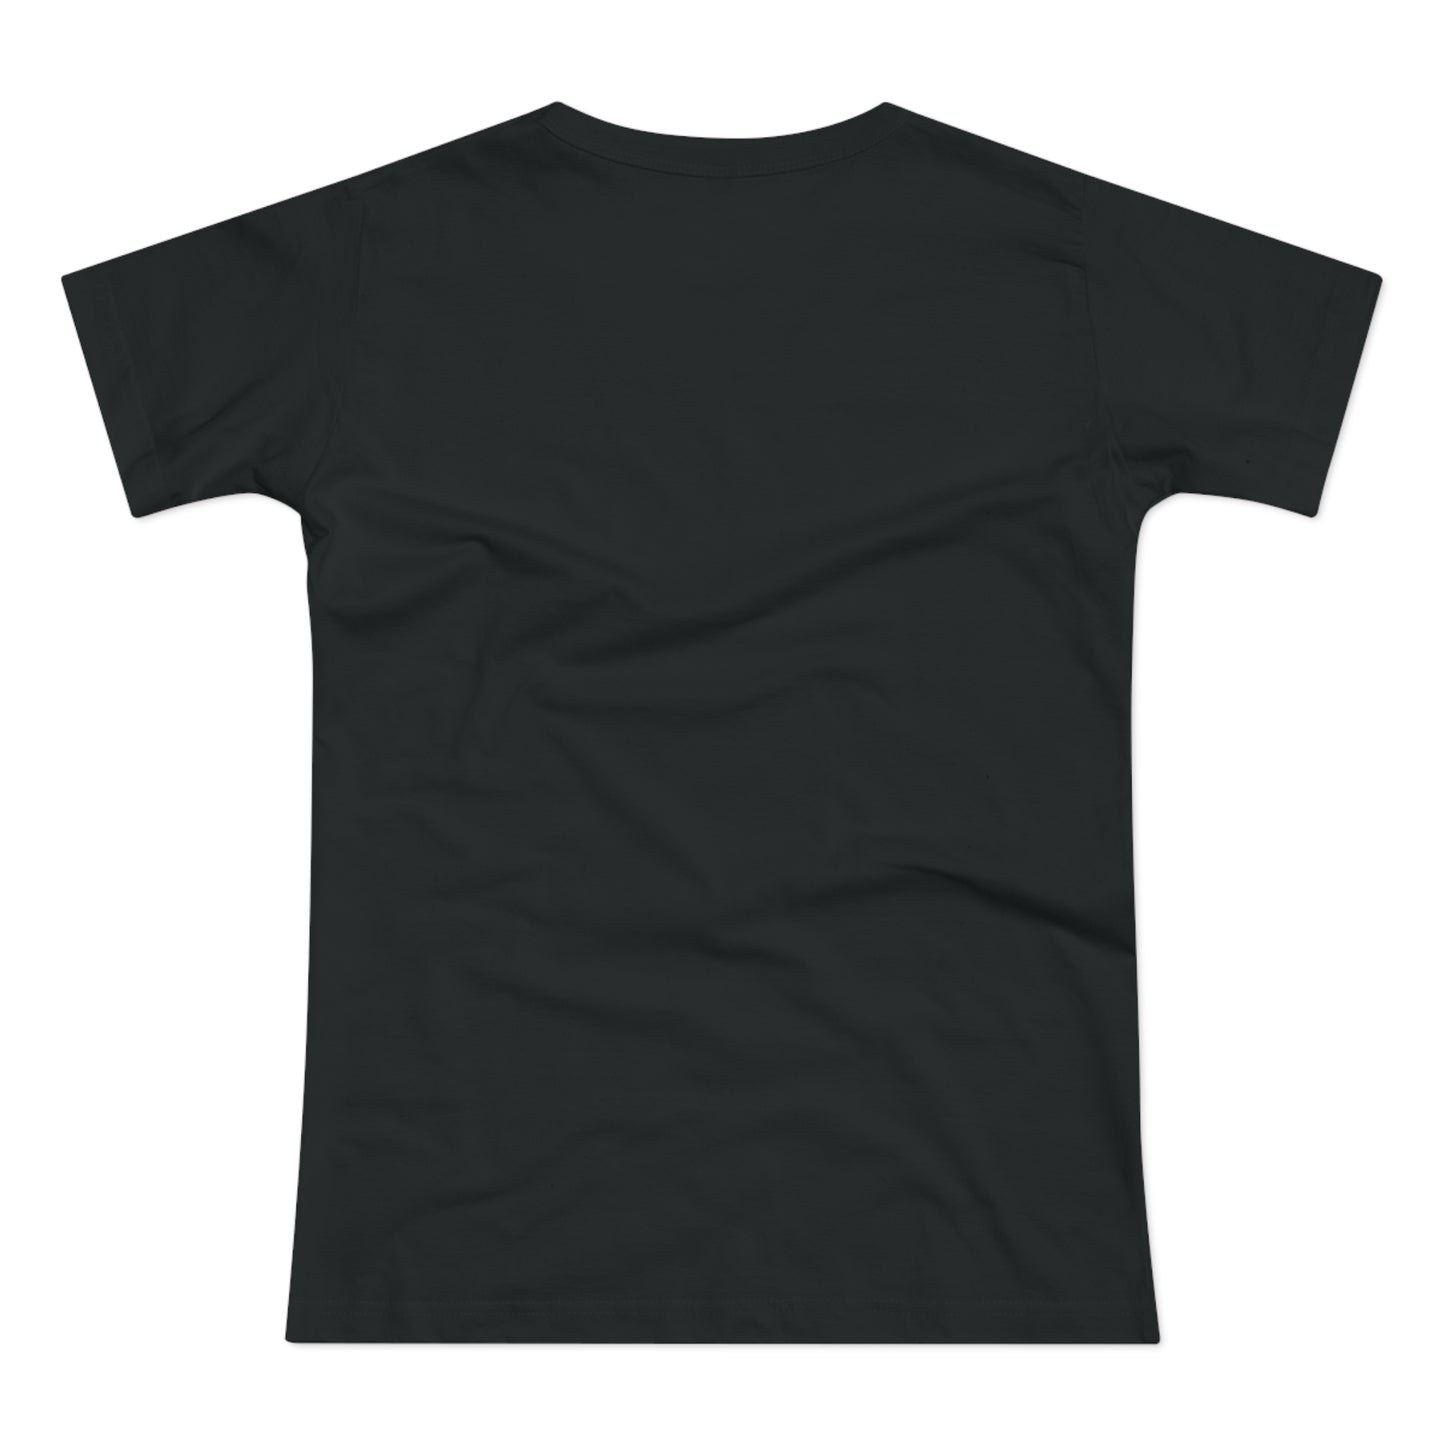 T-skjorte Dame - "Eat, sleep, walk dogs, repeat"